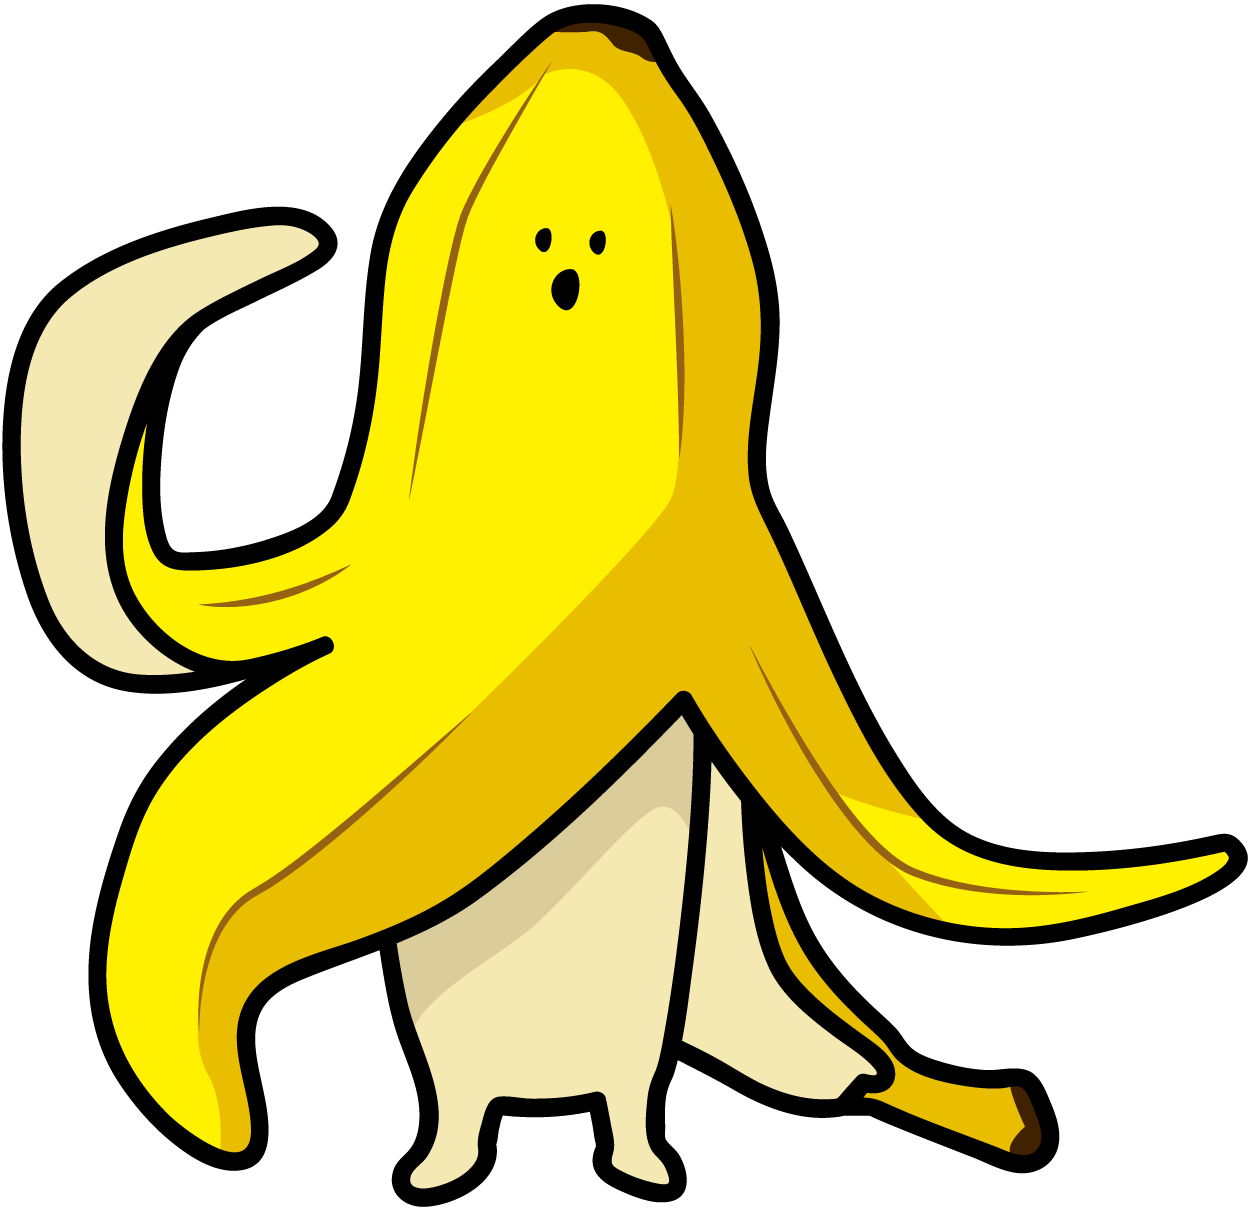 軽く挨拶するバナナのイラスト素材 Veglキャラクターイラスト素材